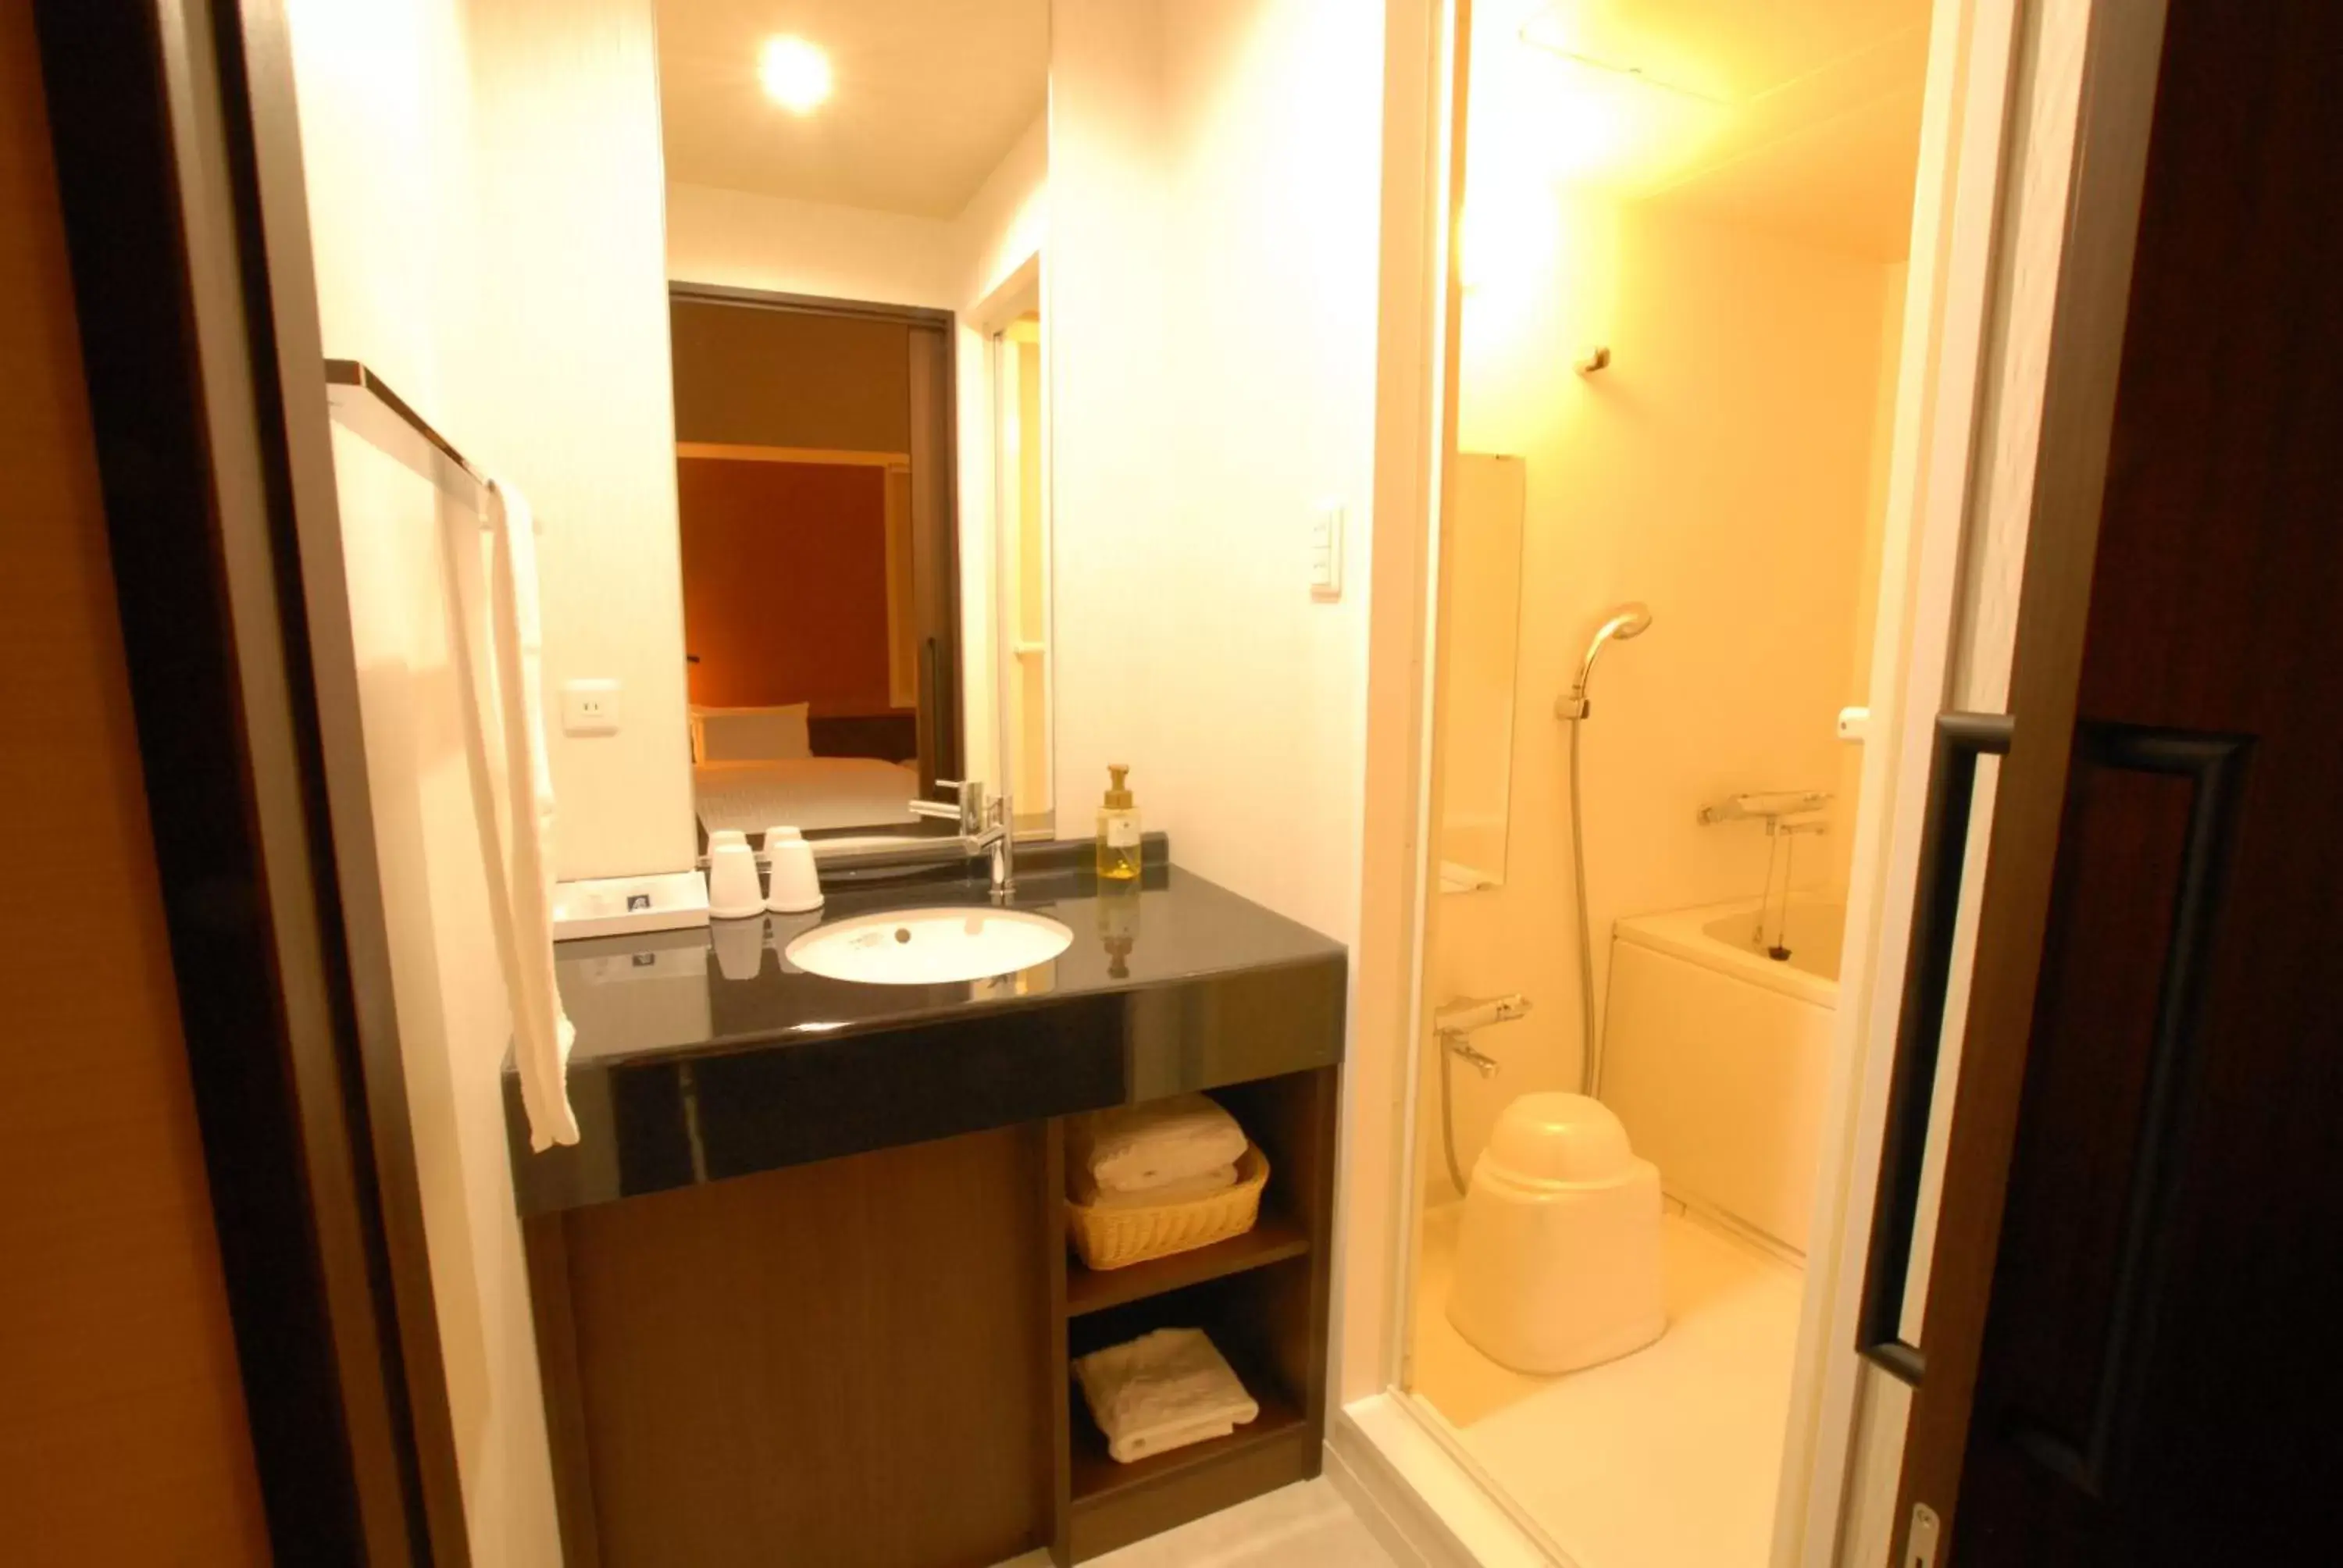 Bathroom in AB Hotel Nara